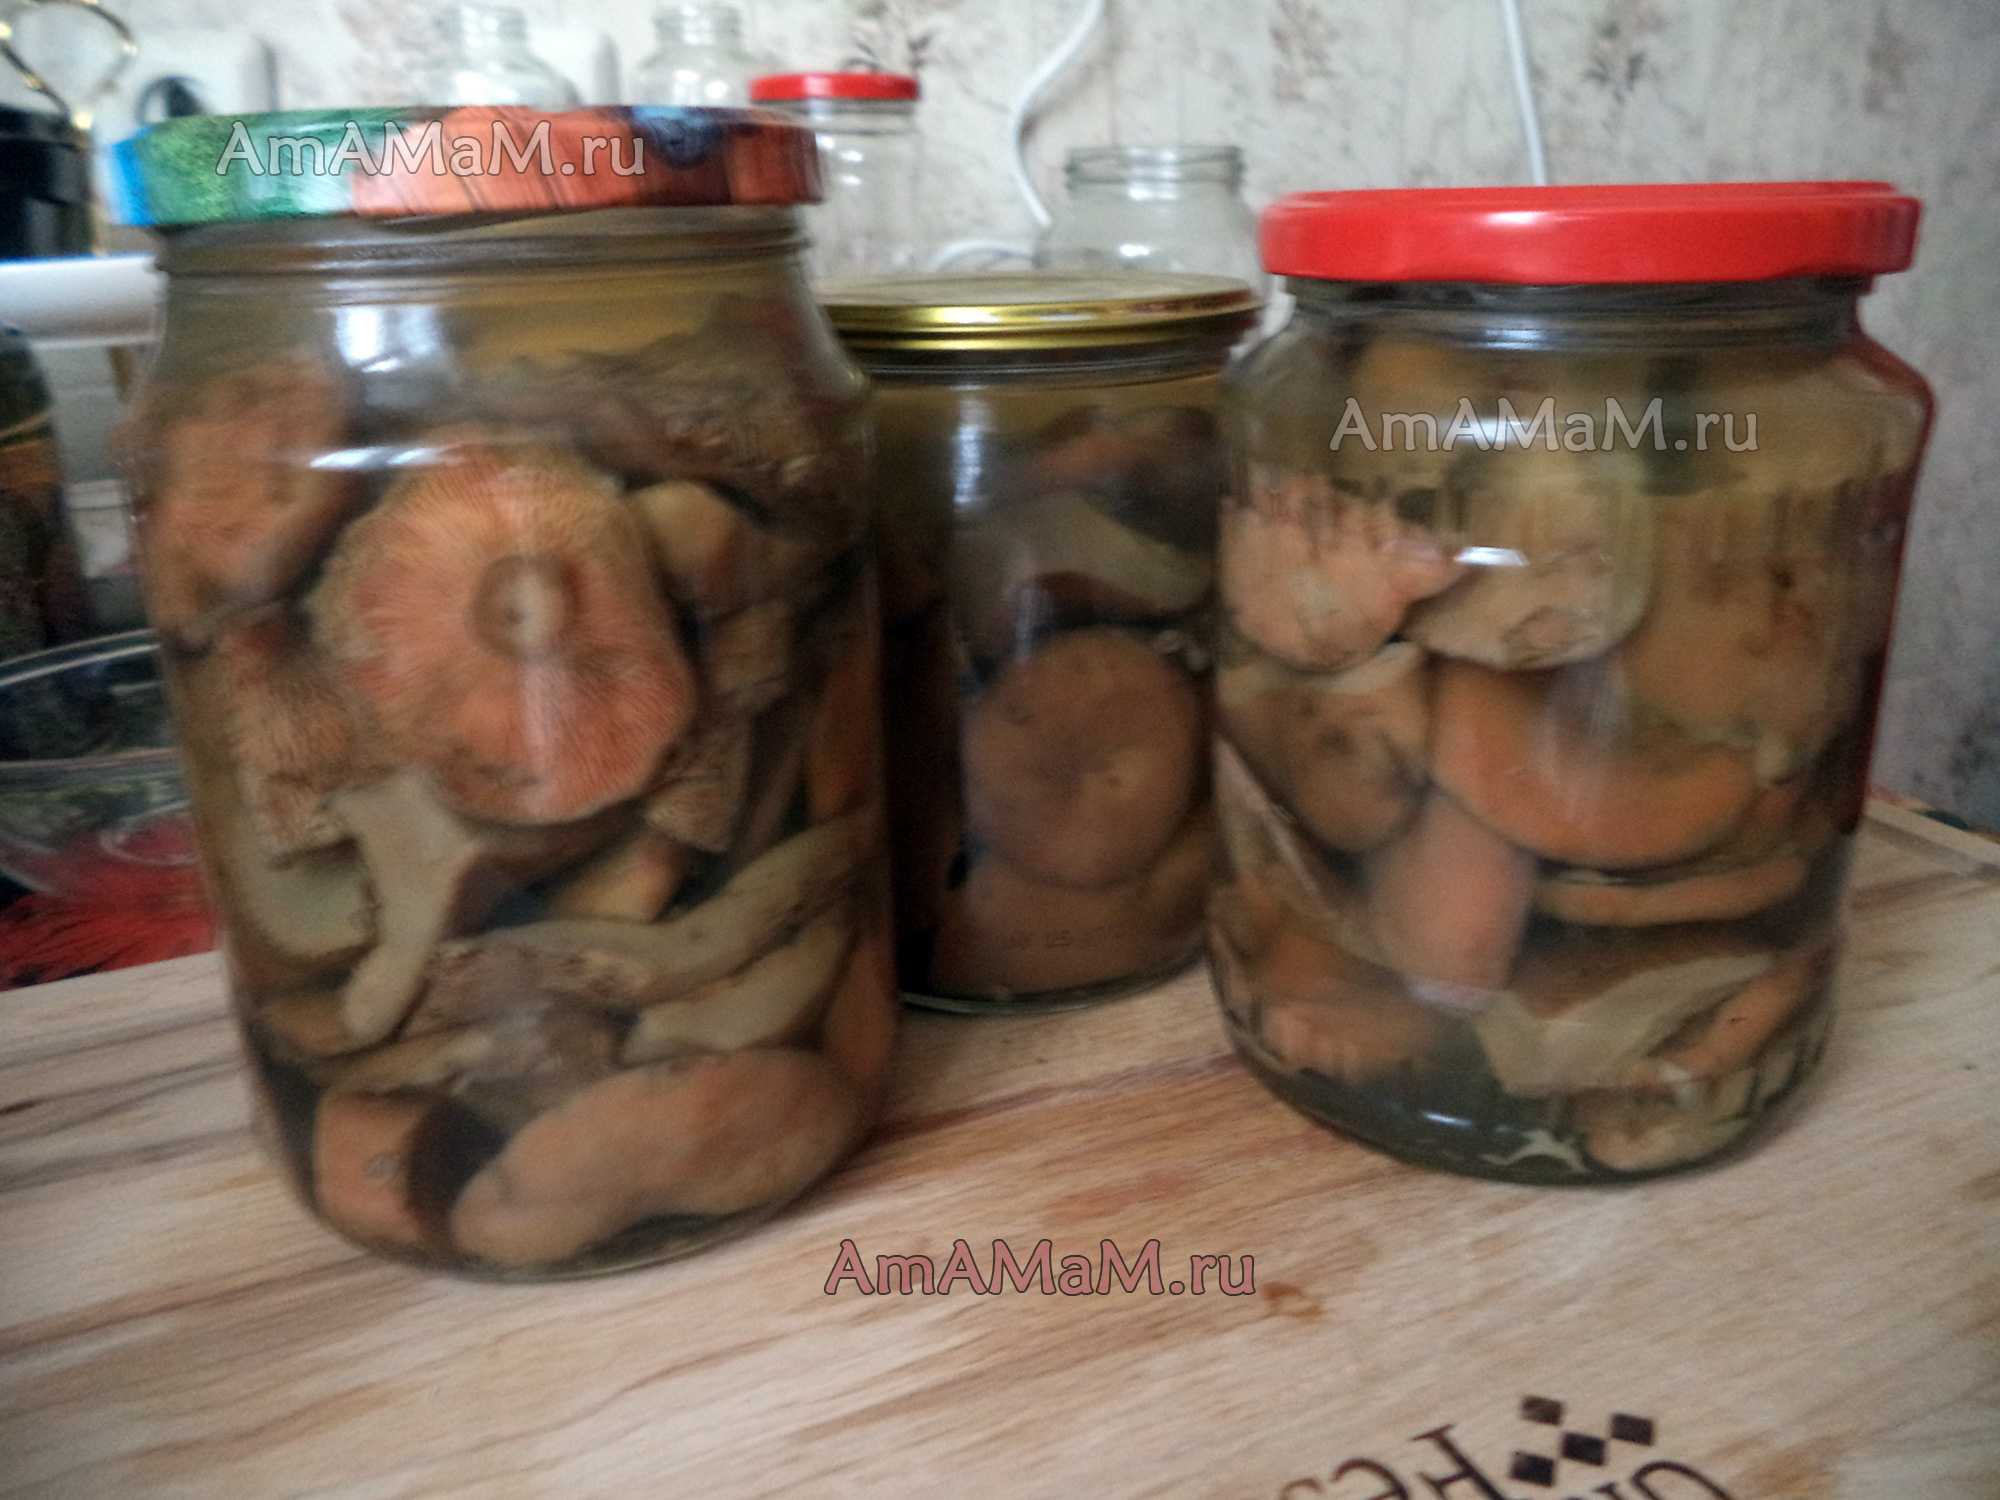 Как солить рыжики - рецепты засолки грибов  холодным, горячим способом и в бочке